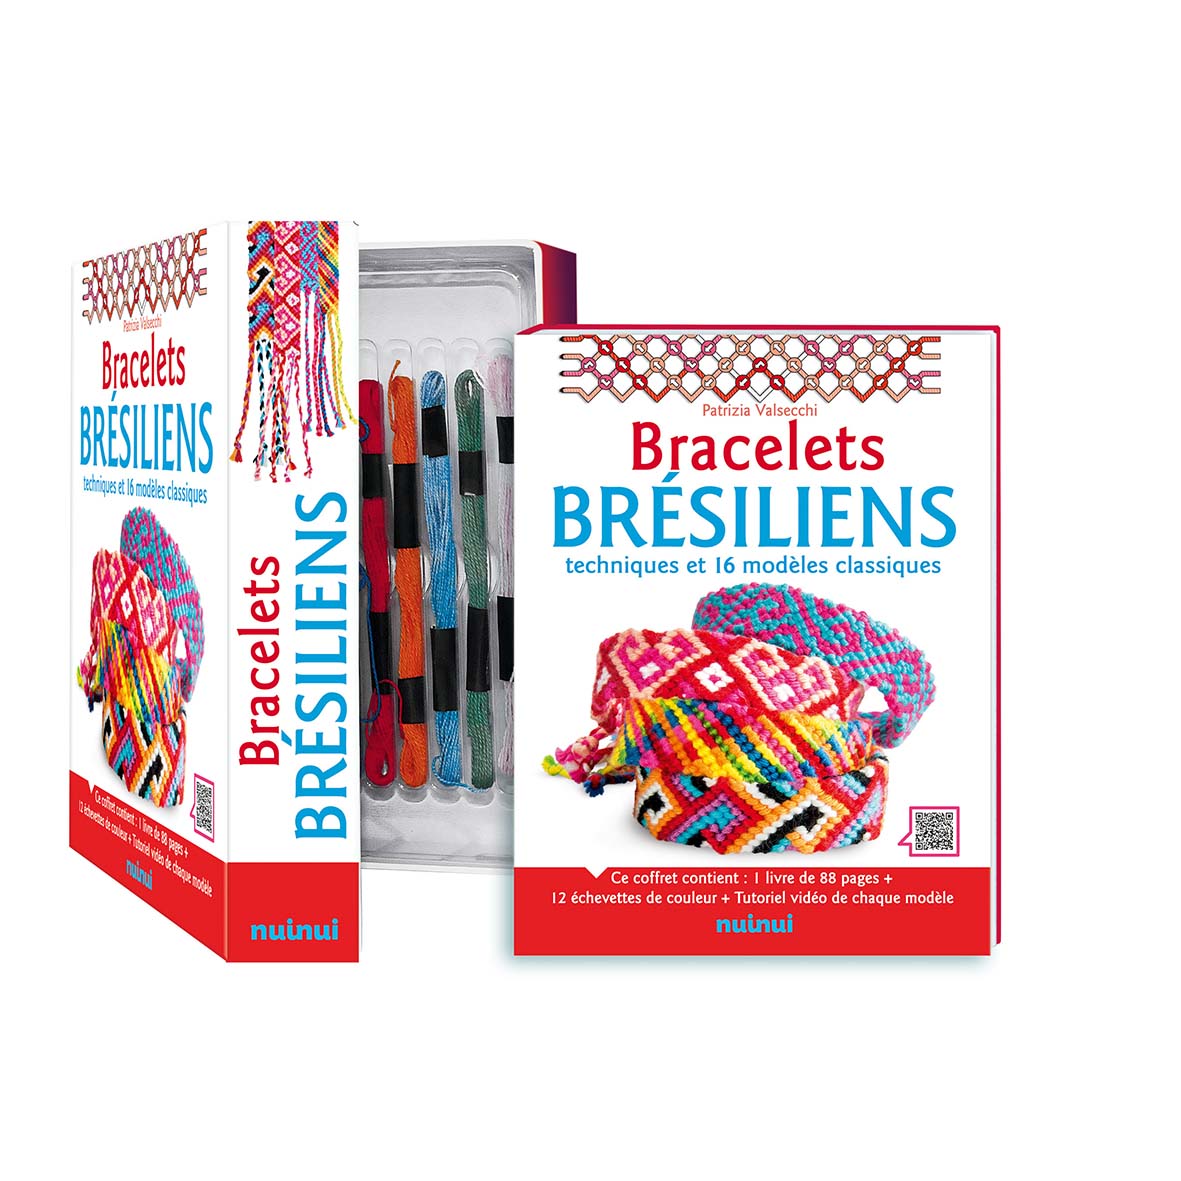 Bracelets brésiliens - Techniques et 16 modèles classiques